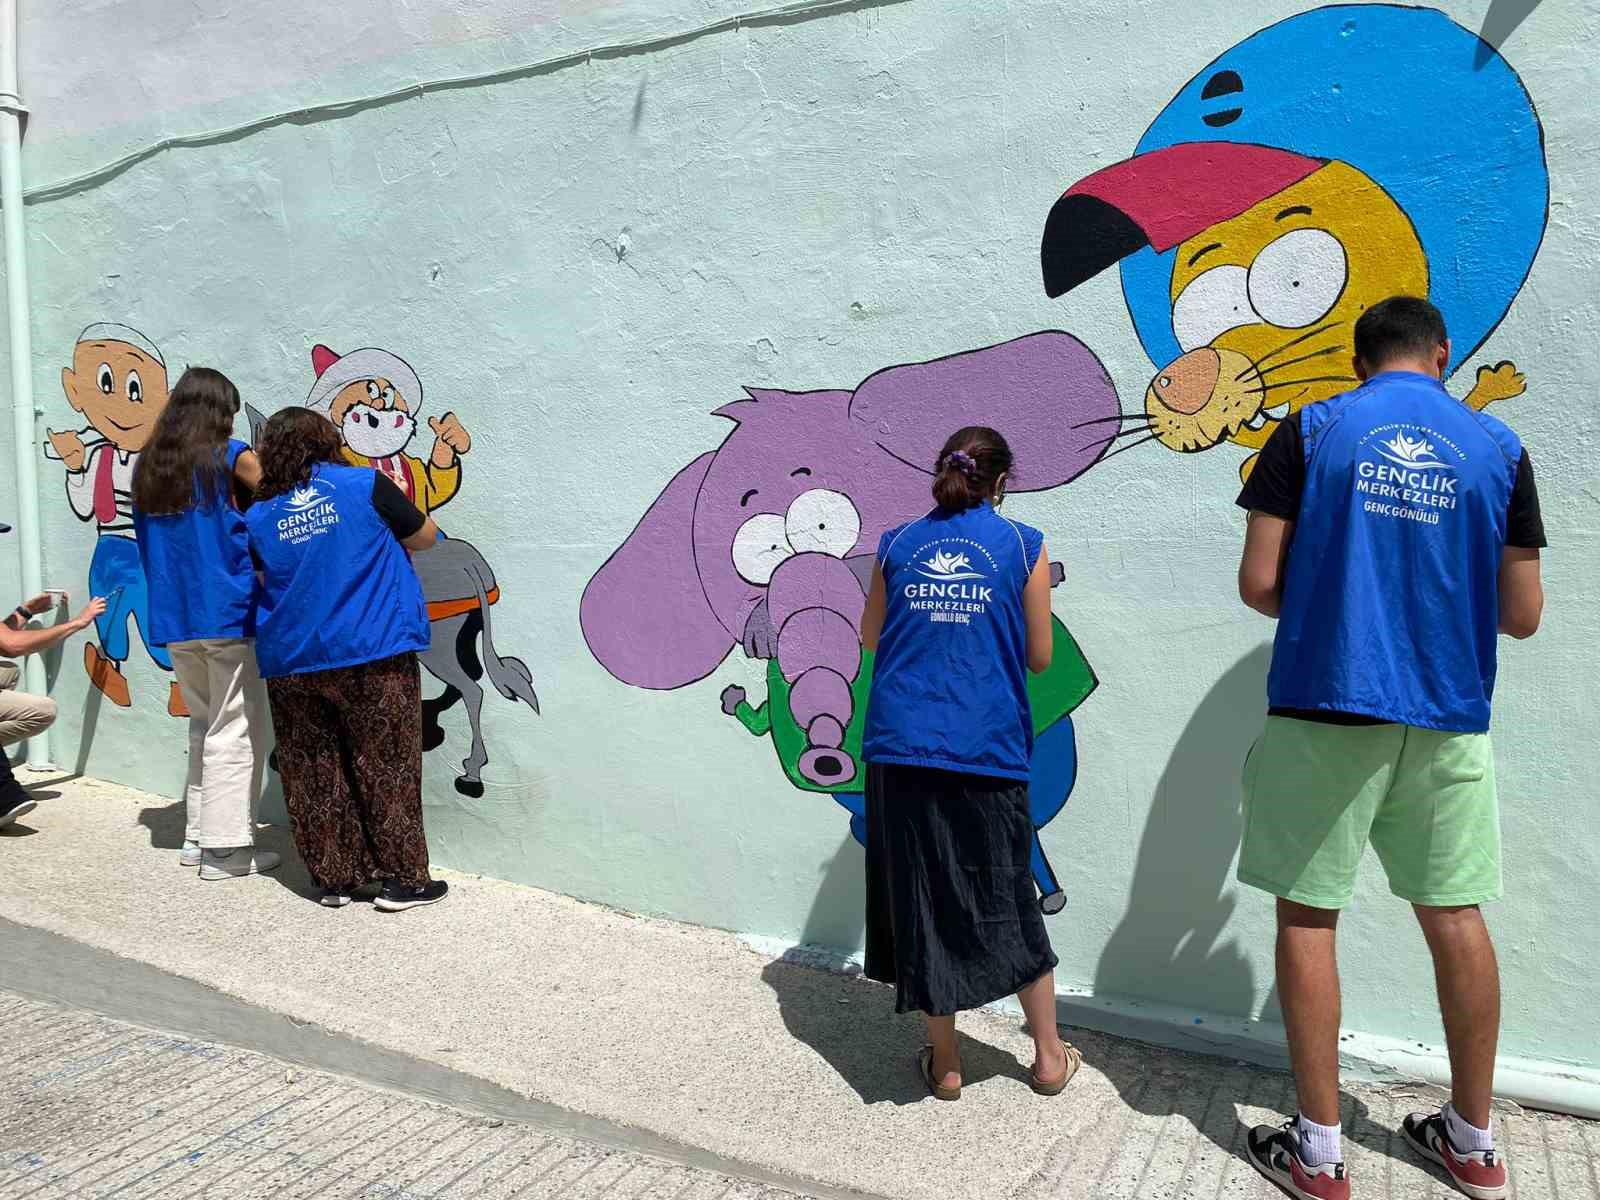 Muğla’da gönüllü gençler okul duvarlarına masal kahramanlarını resmediyor
